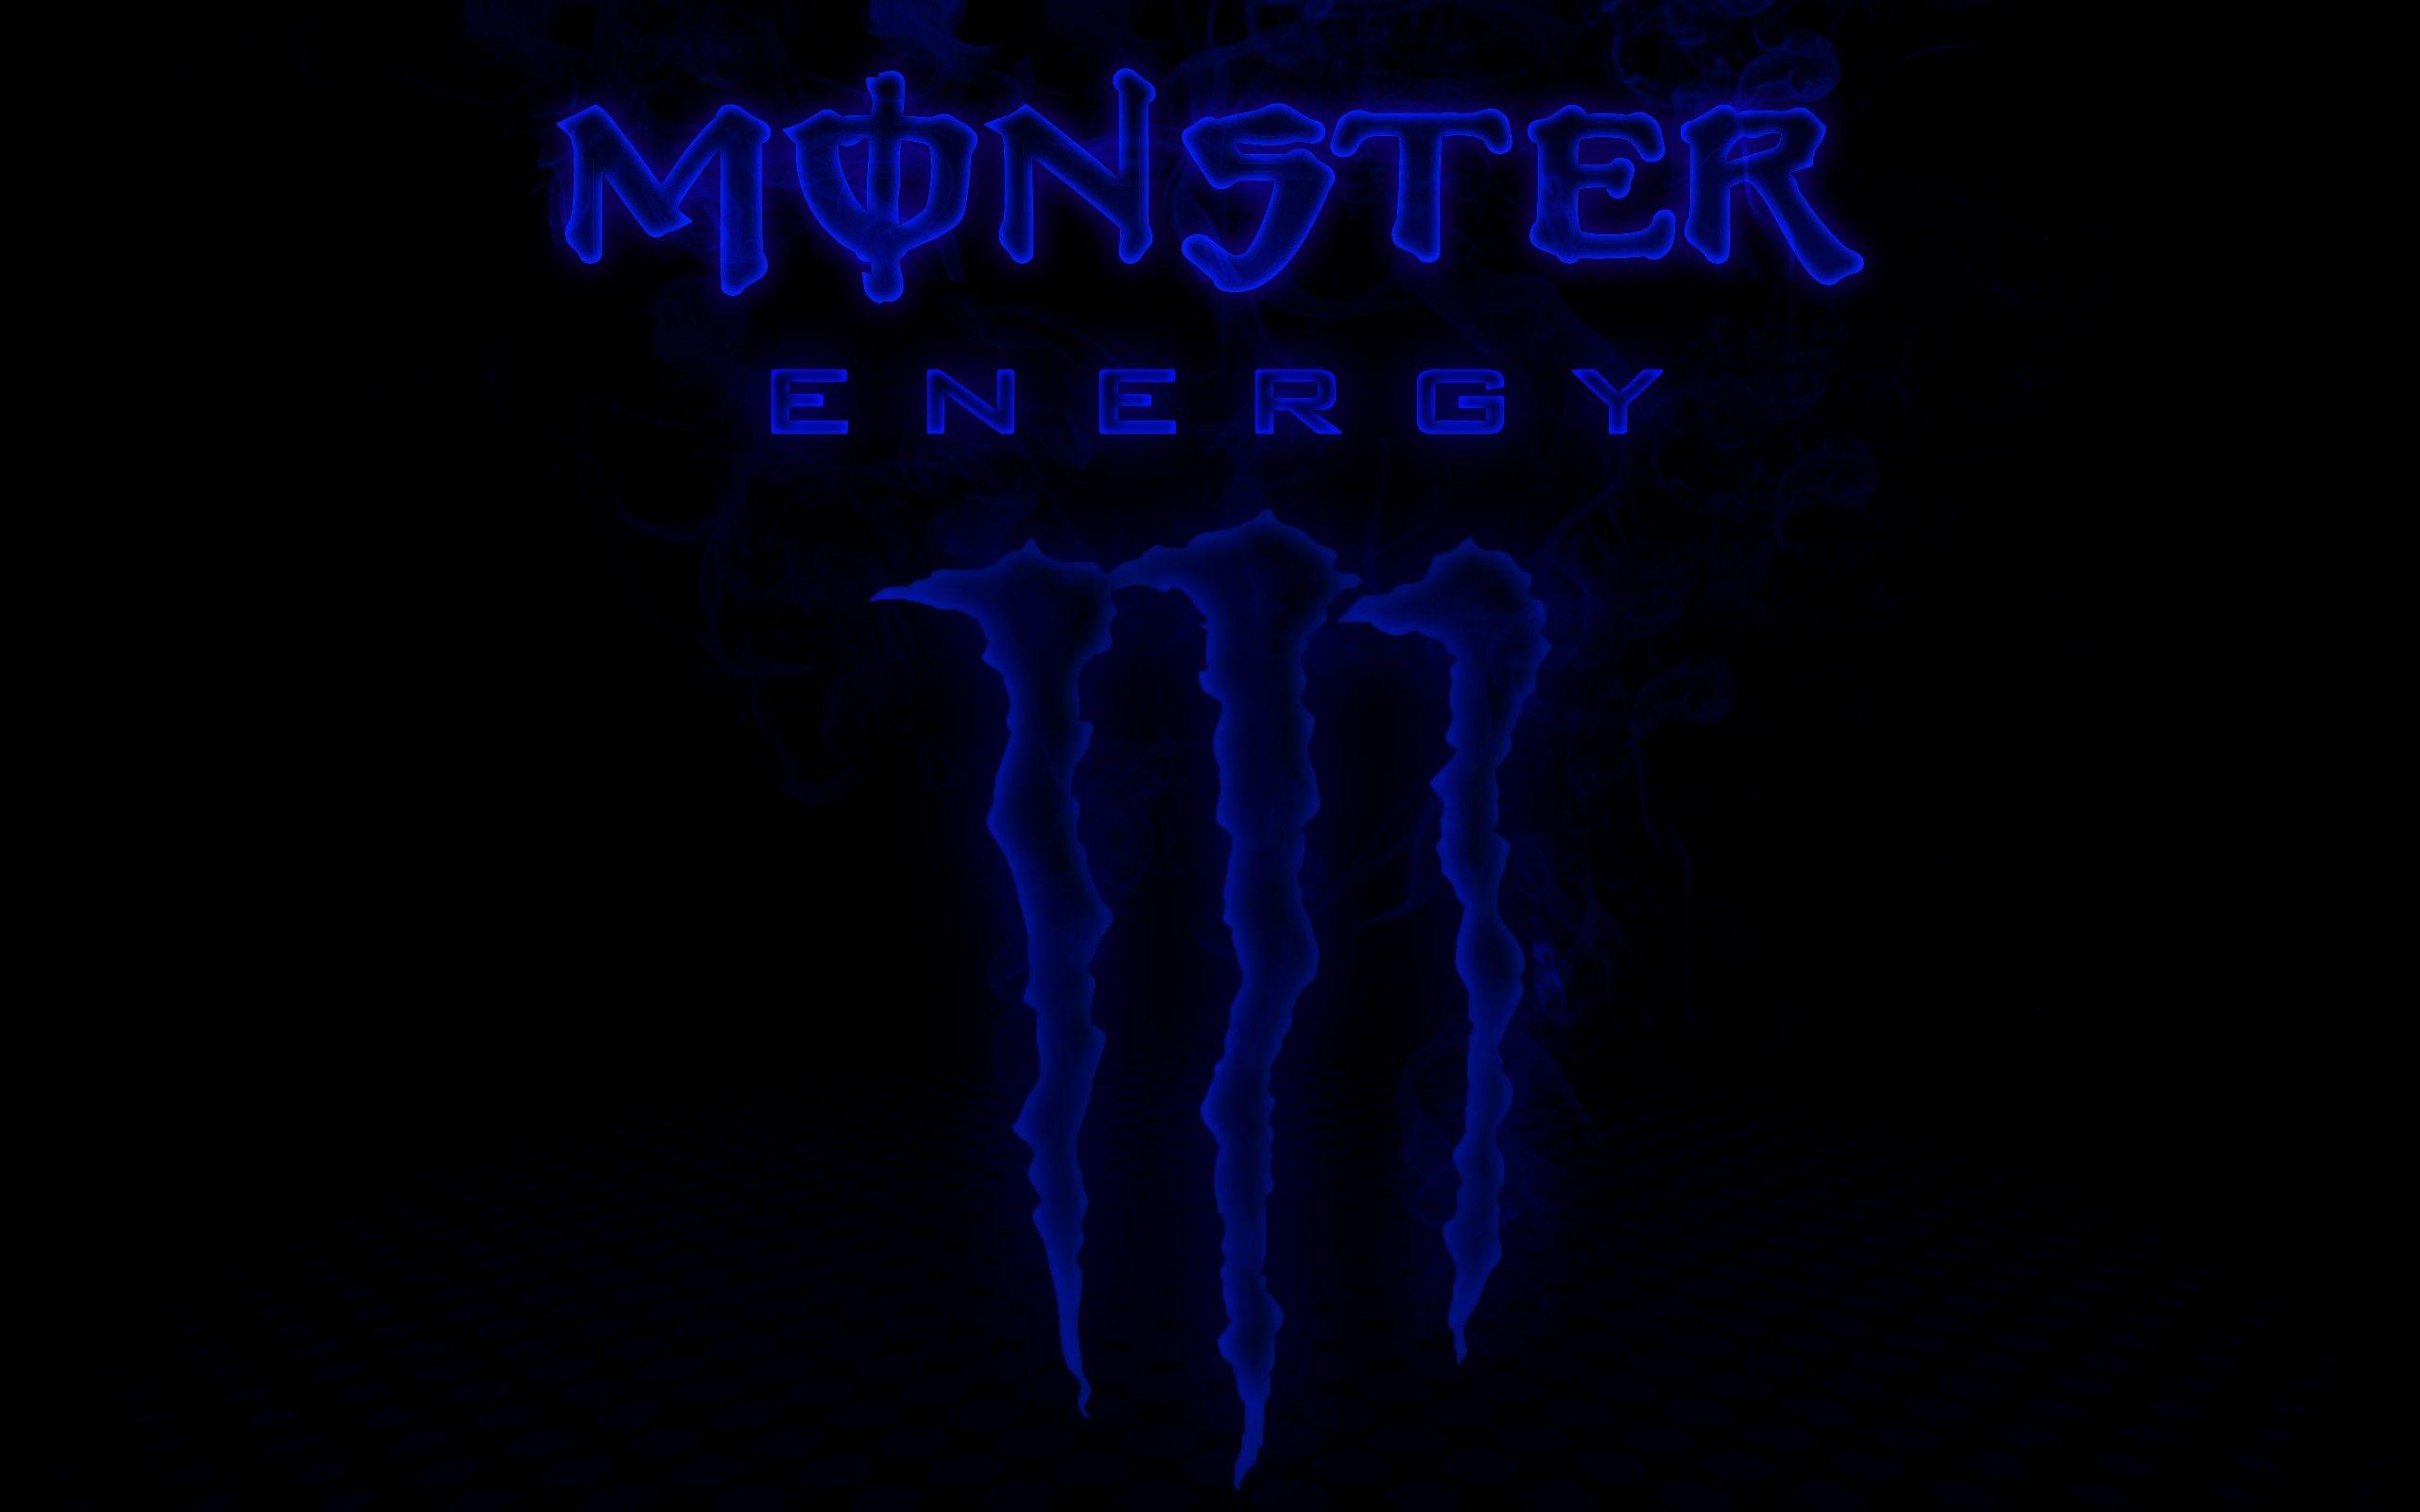 The Monster Energy Logo - Blue monster energy Logos